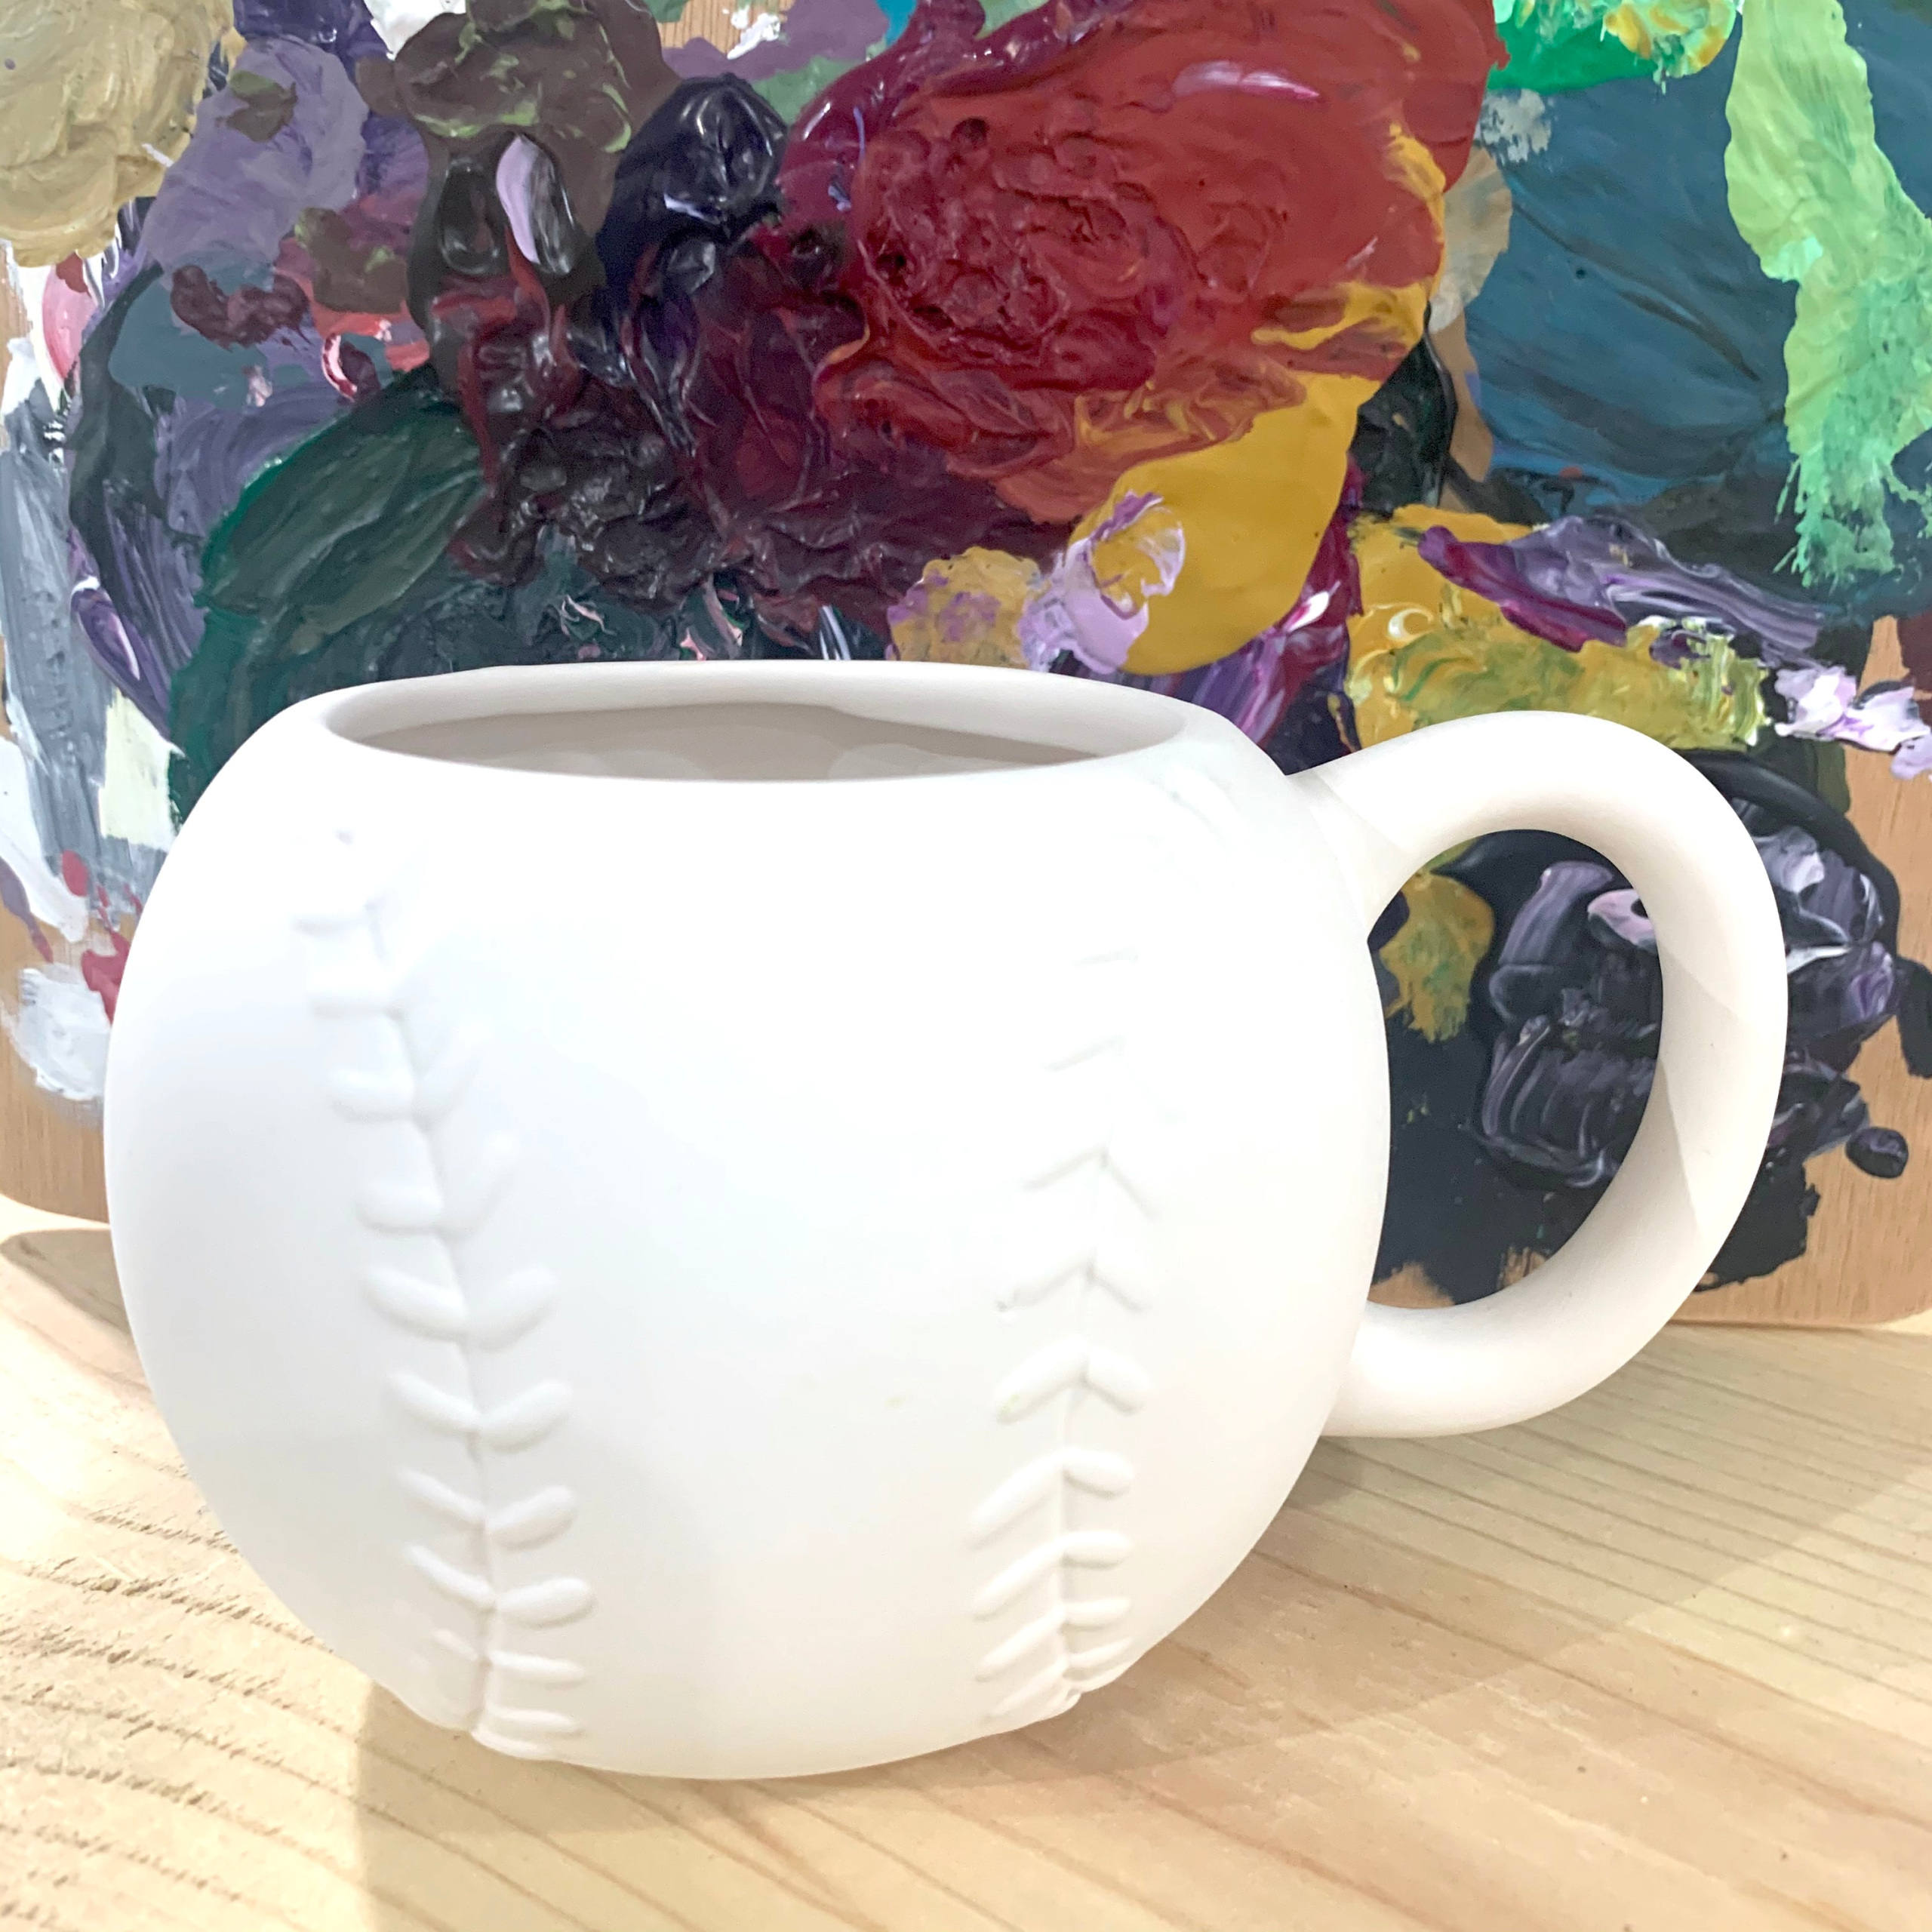 Baseball Mug